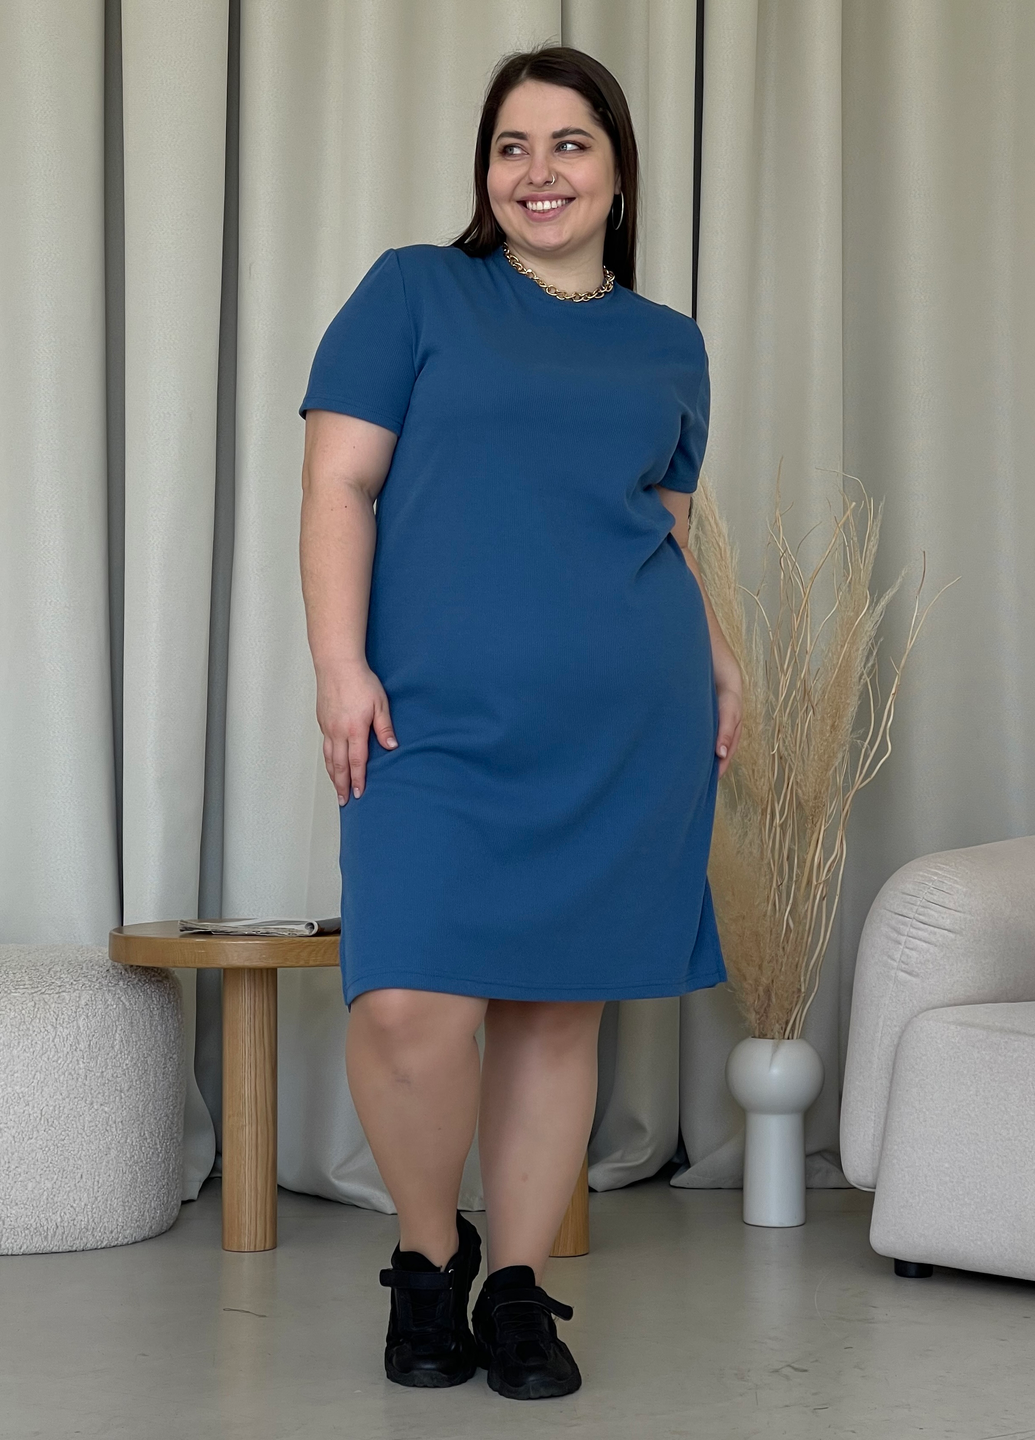 Купить Платье-футболка до колена в рубчик синее Merlini Милан 700000151 размер 42-44 (S-M) в интернет-магазине